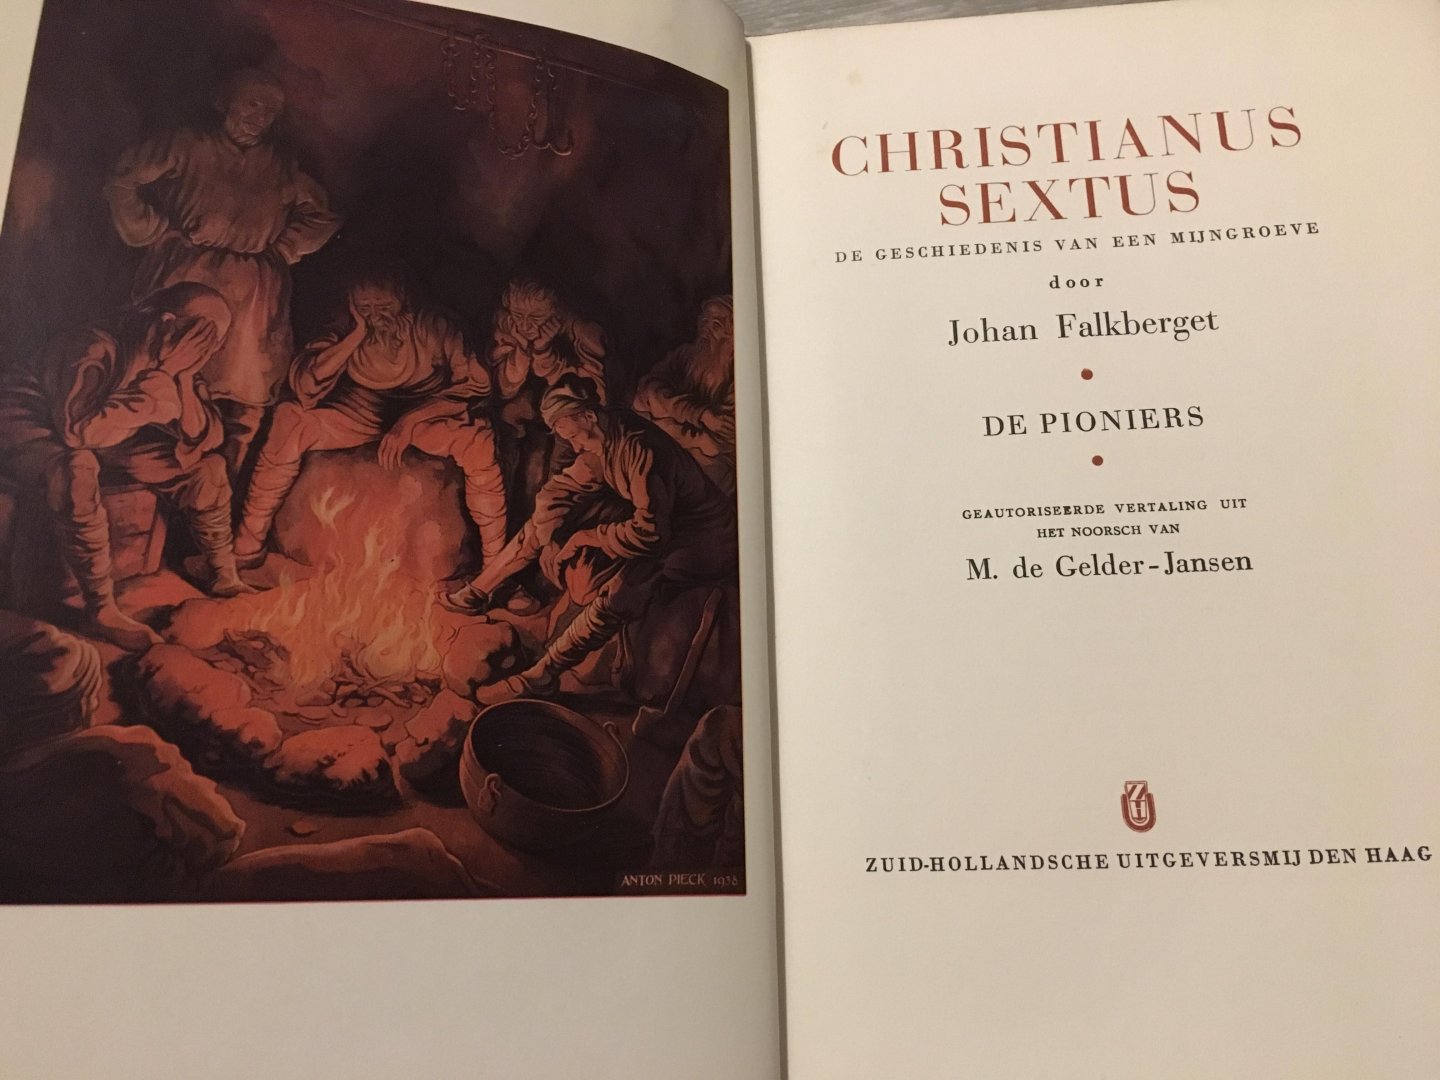 Johan Falkberget - Twee delen van Christianus Sextus; Christianus Sextus de geschiedenis van een mijngroeve, De Pioniers & De klokken Luiden